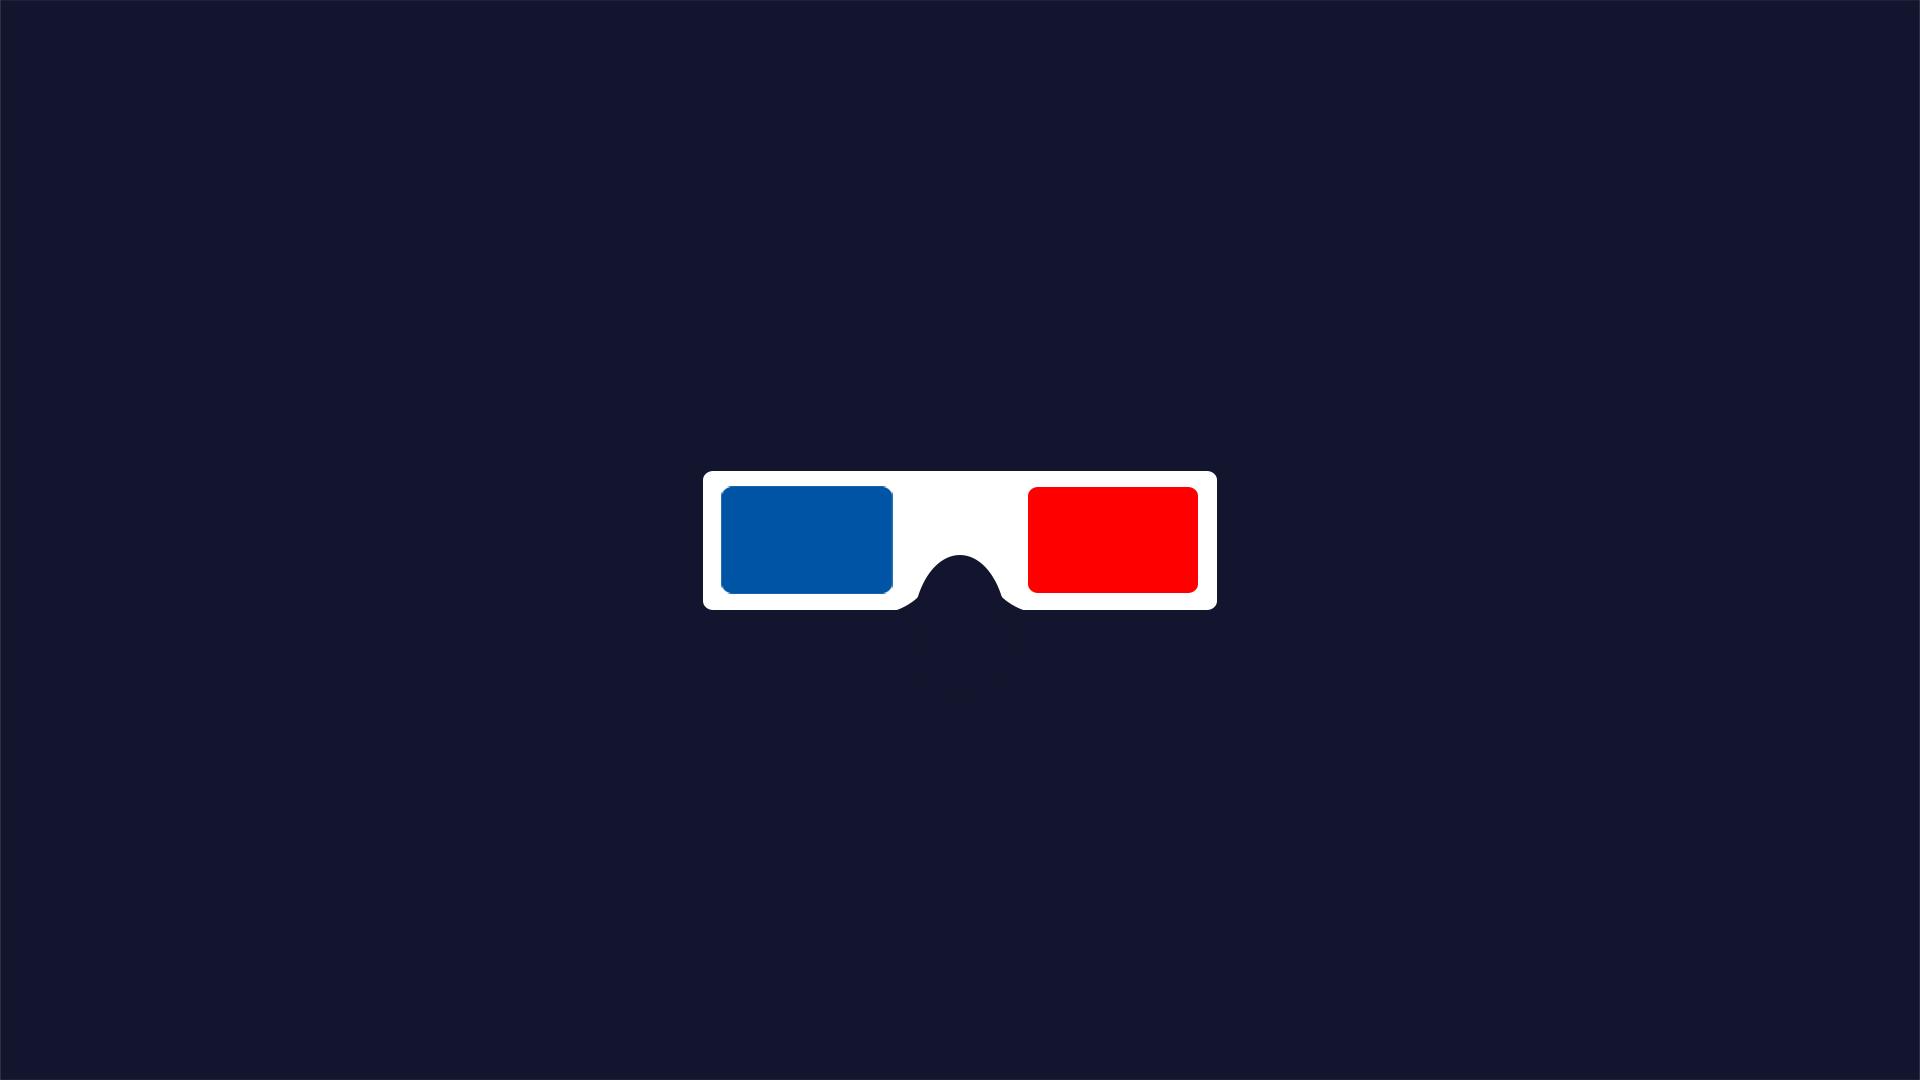 Minimalist 3D Glasses [OC][1920x1080]